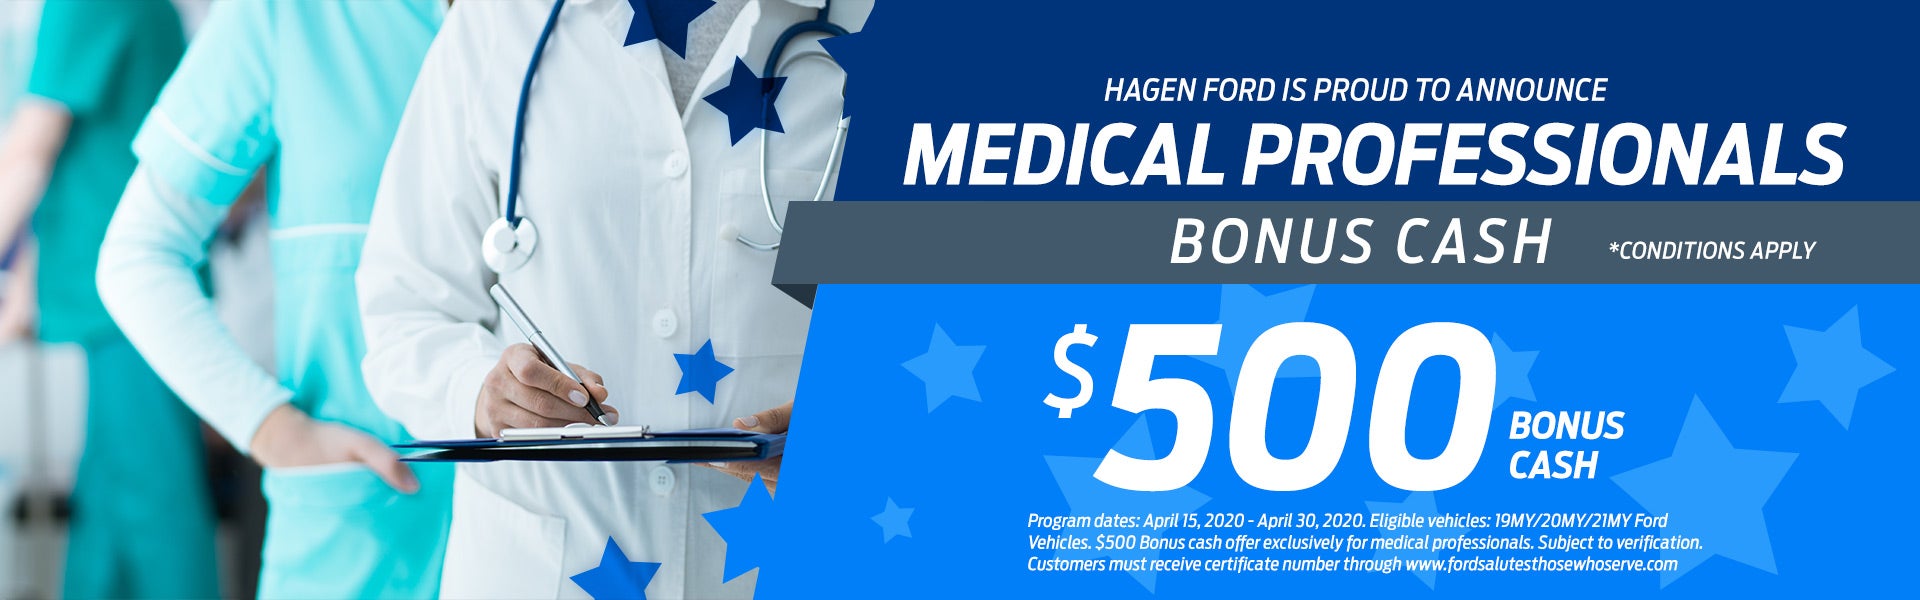 Medical Professionals Bonus Cash